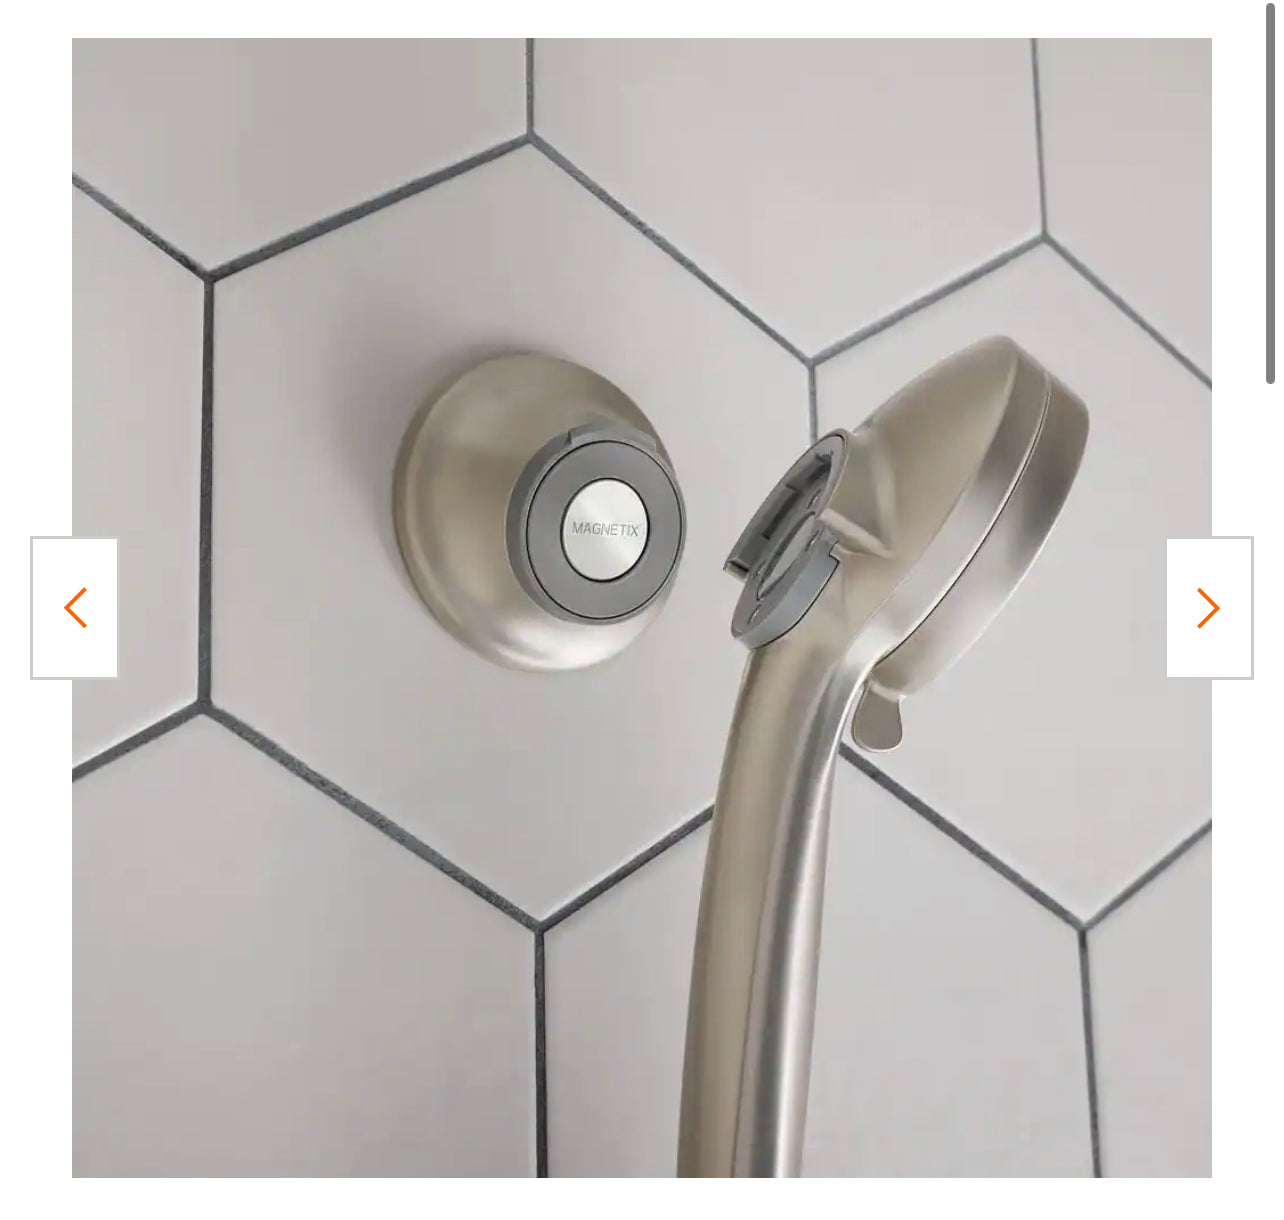 Moen Magnetix Remote Cradle for Handheld Shower in Spot Resist Brushed Nickel Damaged Box